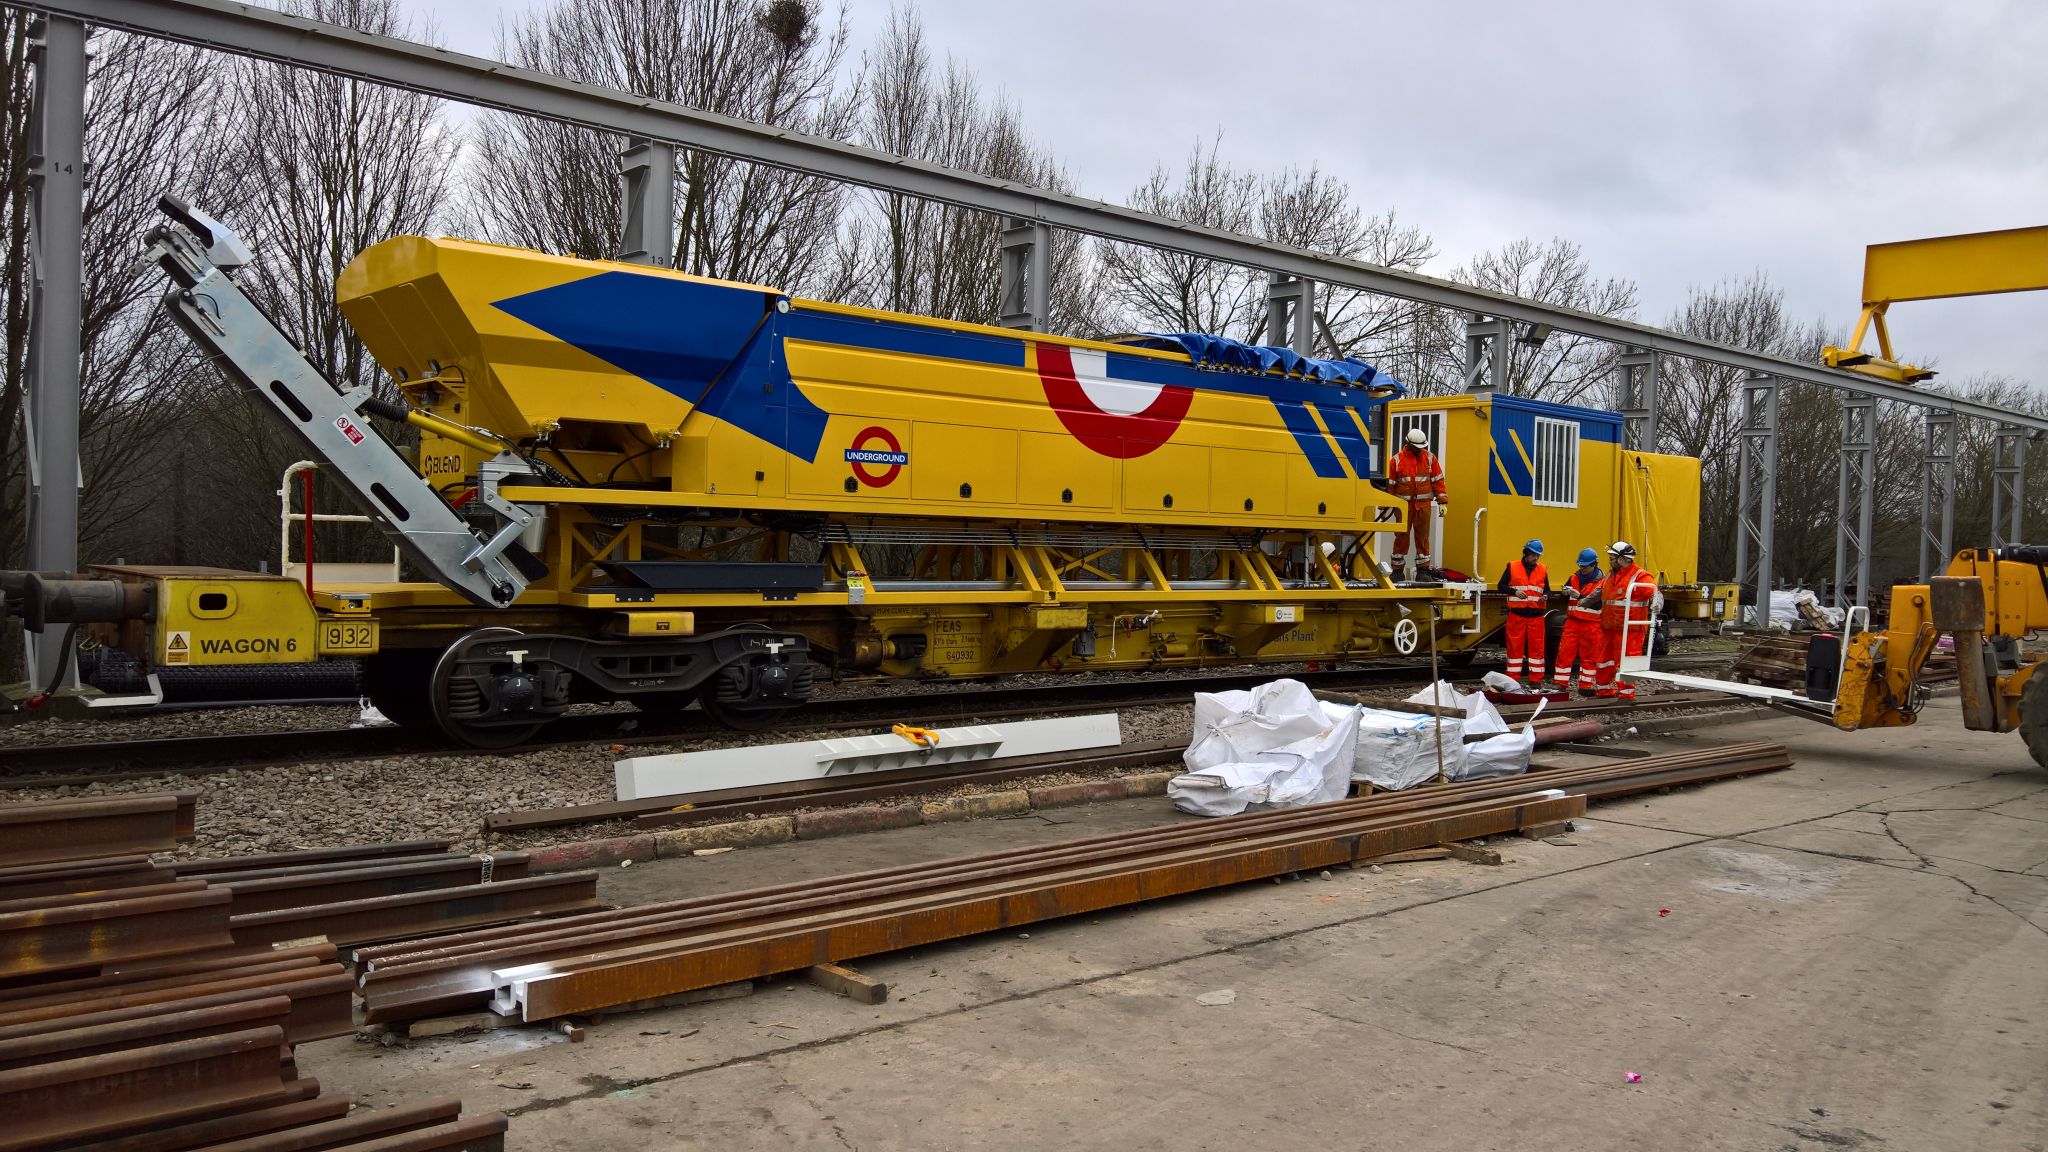 Equipamiento de mantenimiento ferroviario/ Taller ferroviario/ Mantenimiento de vía